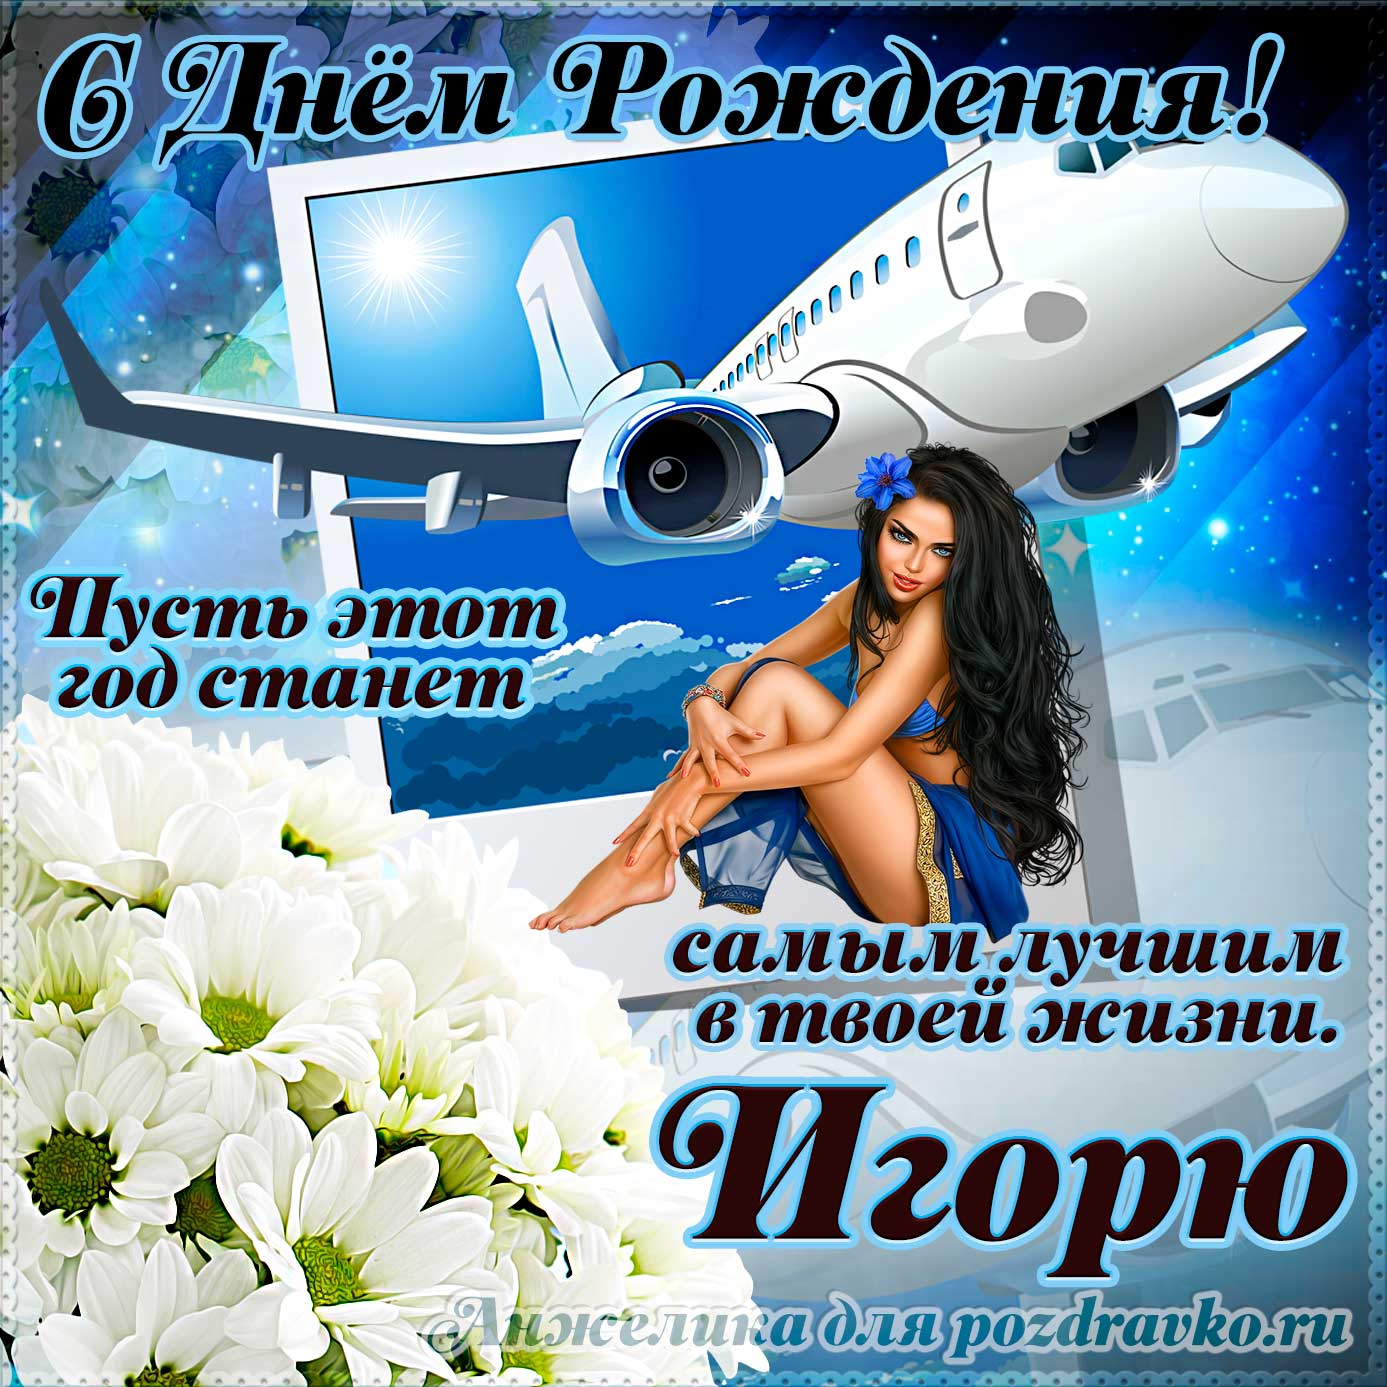 Открытка - Игорю на день рождения с красивым пожеланием самолетом и девушкой. Скачать бесплатно или отправить картинку.